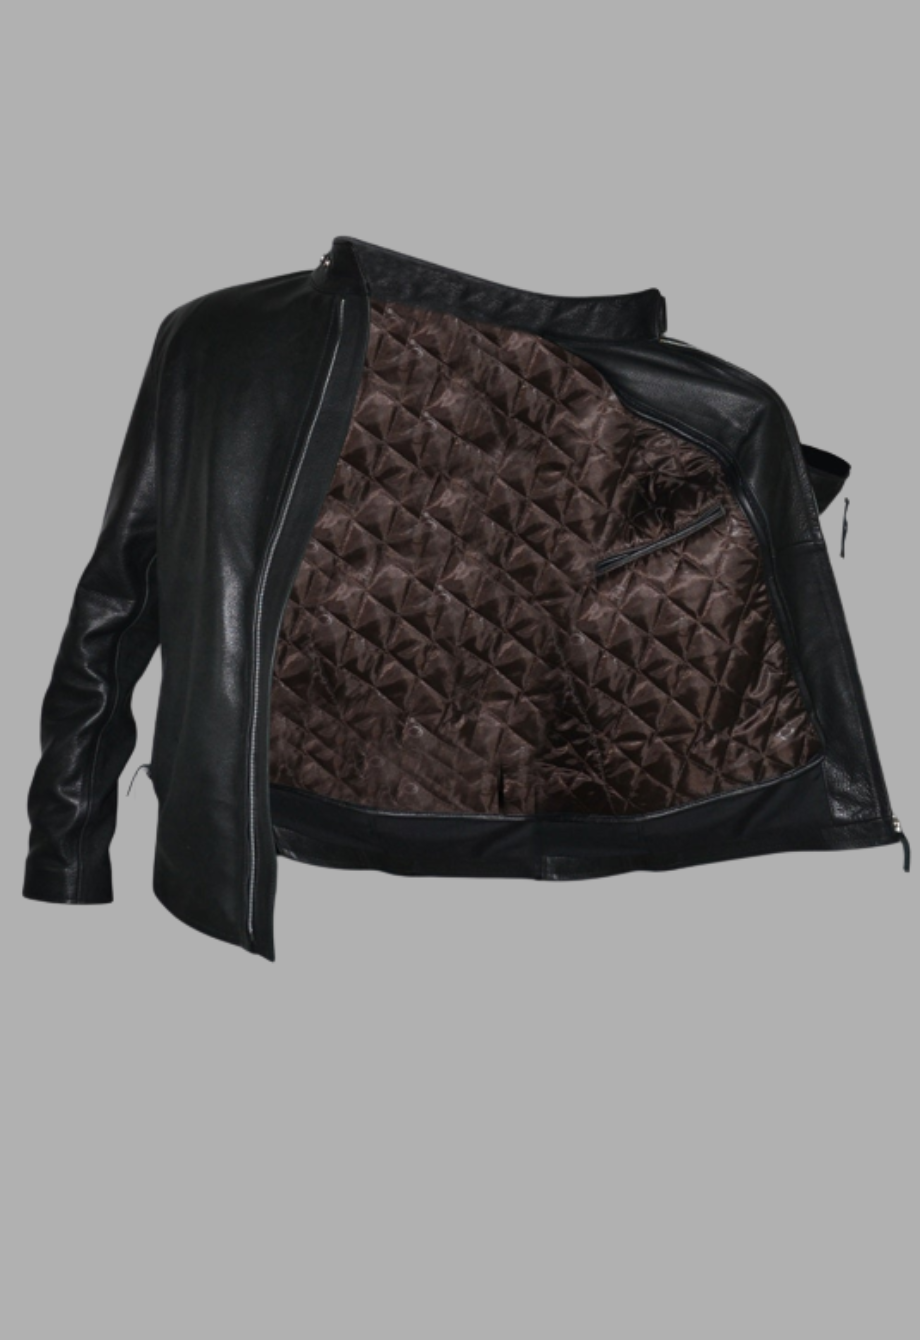 Mens Designer Motorcycle Black Racer Leather Jacket